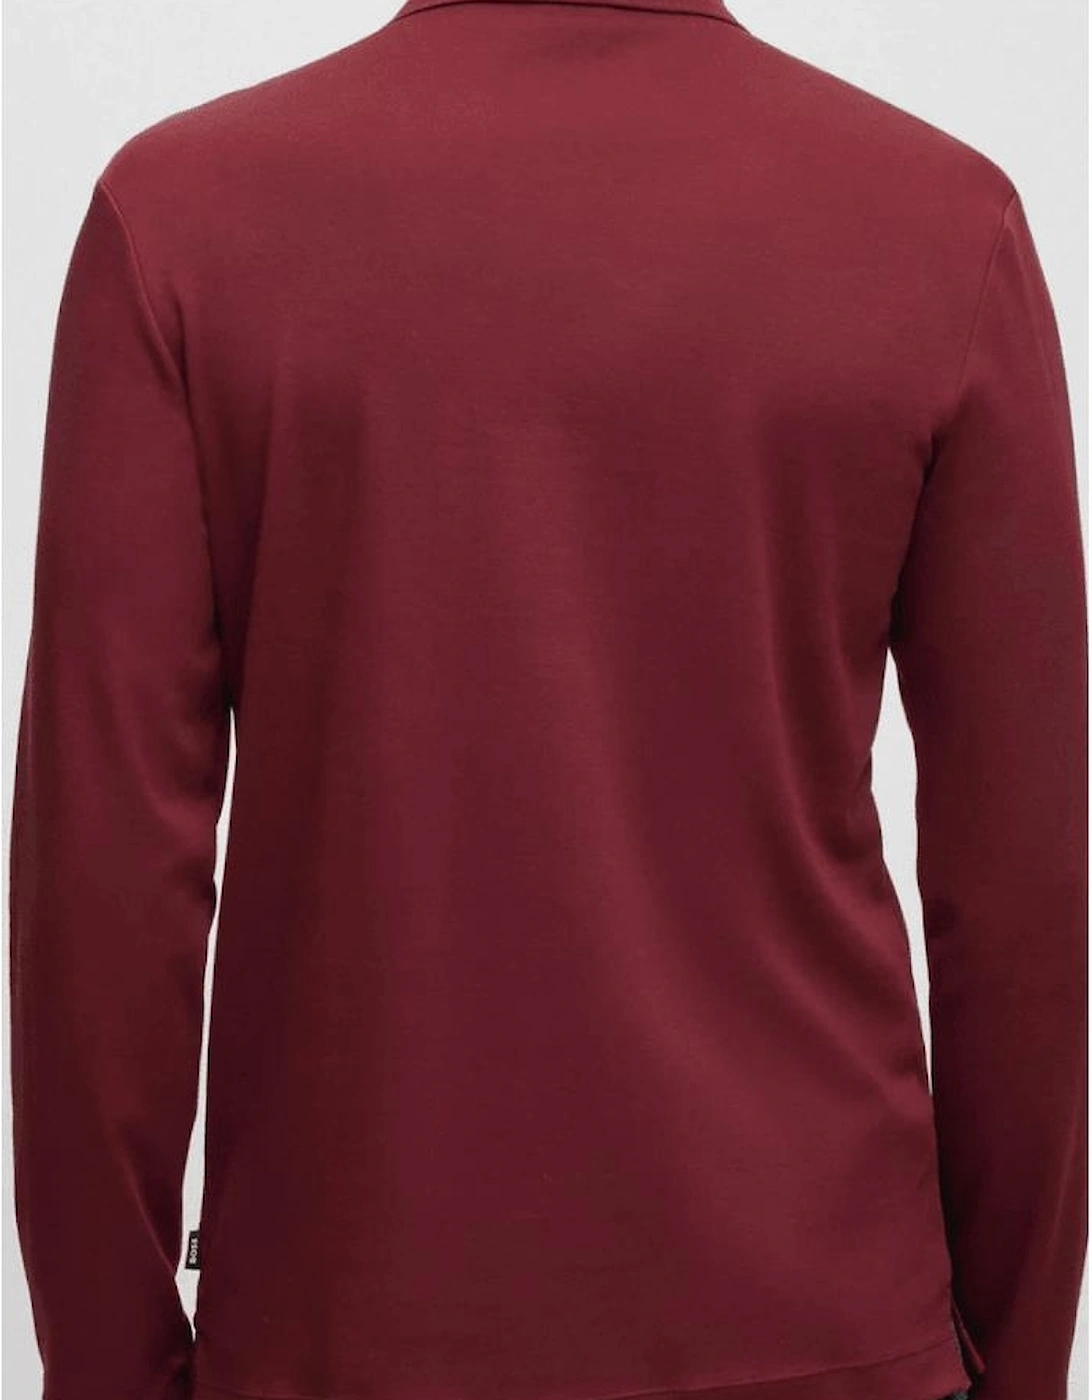 Pado Embroidered Logo Long Sleeve Burgundy Polo Shirt